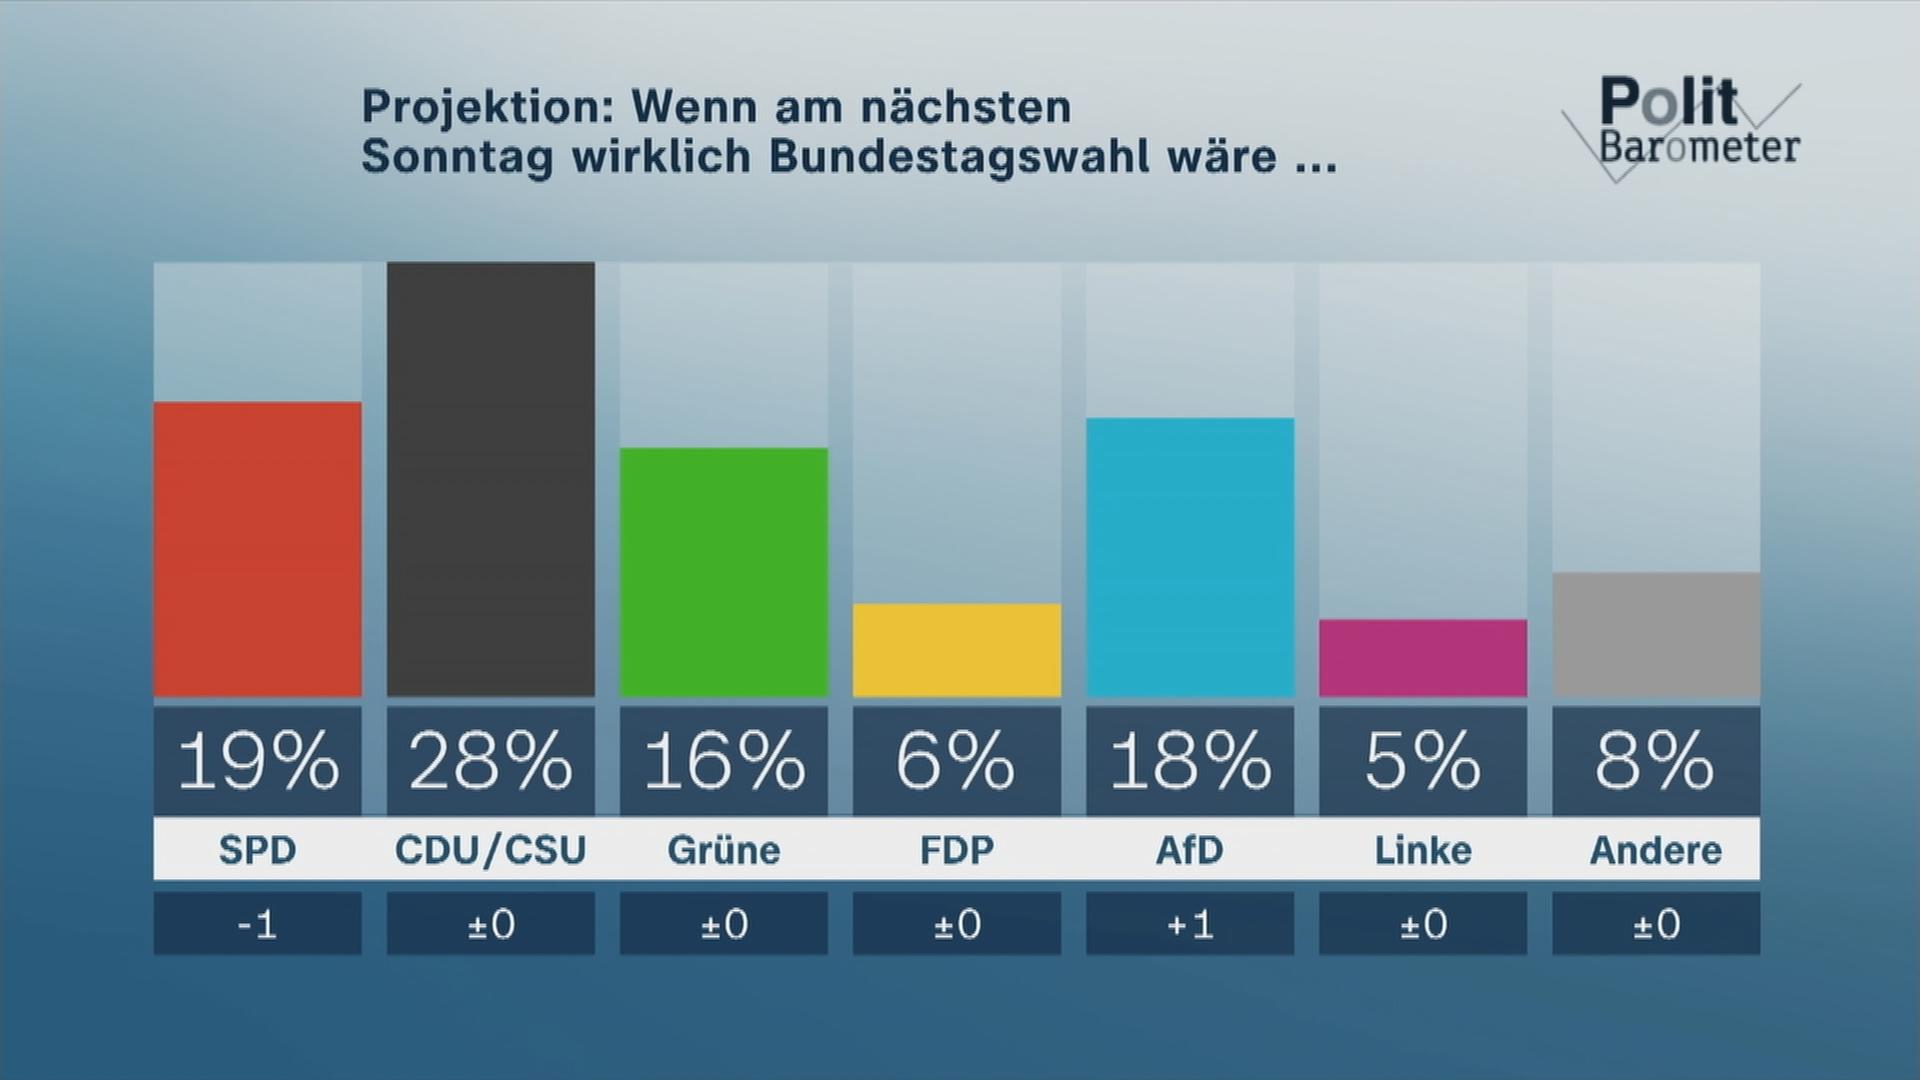 Das ZDF-Politbarometer vom 16. Juni 2023 zeigt an, dass 19% die SPD, 28% CDU/CSU, 16% Grüne, 6% FDP, 18% AfD, 5% Linke und 8% andere Parteien wählen würden, wenn morgen Bundestagswahl wäre.